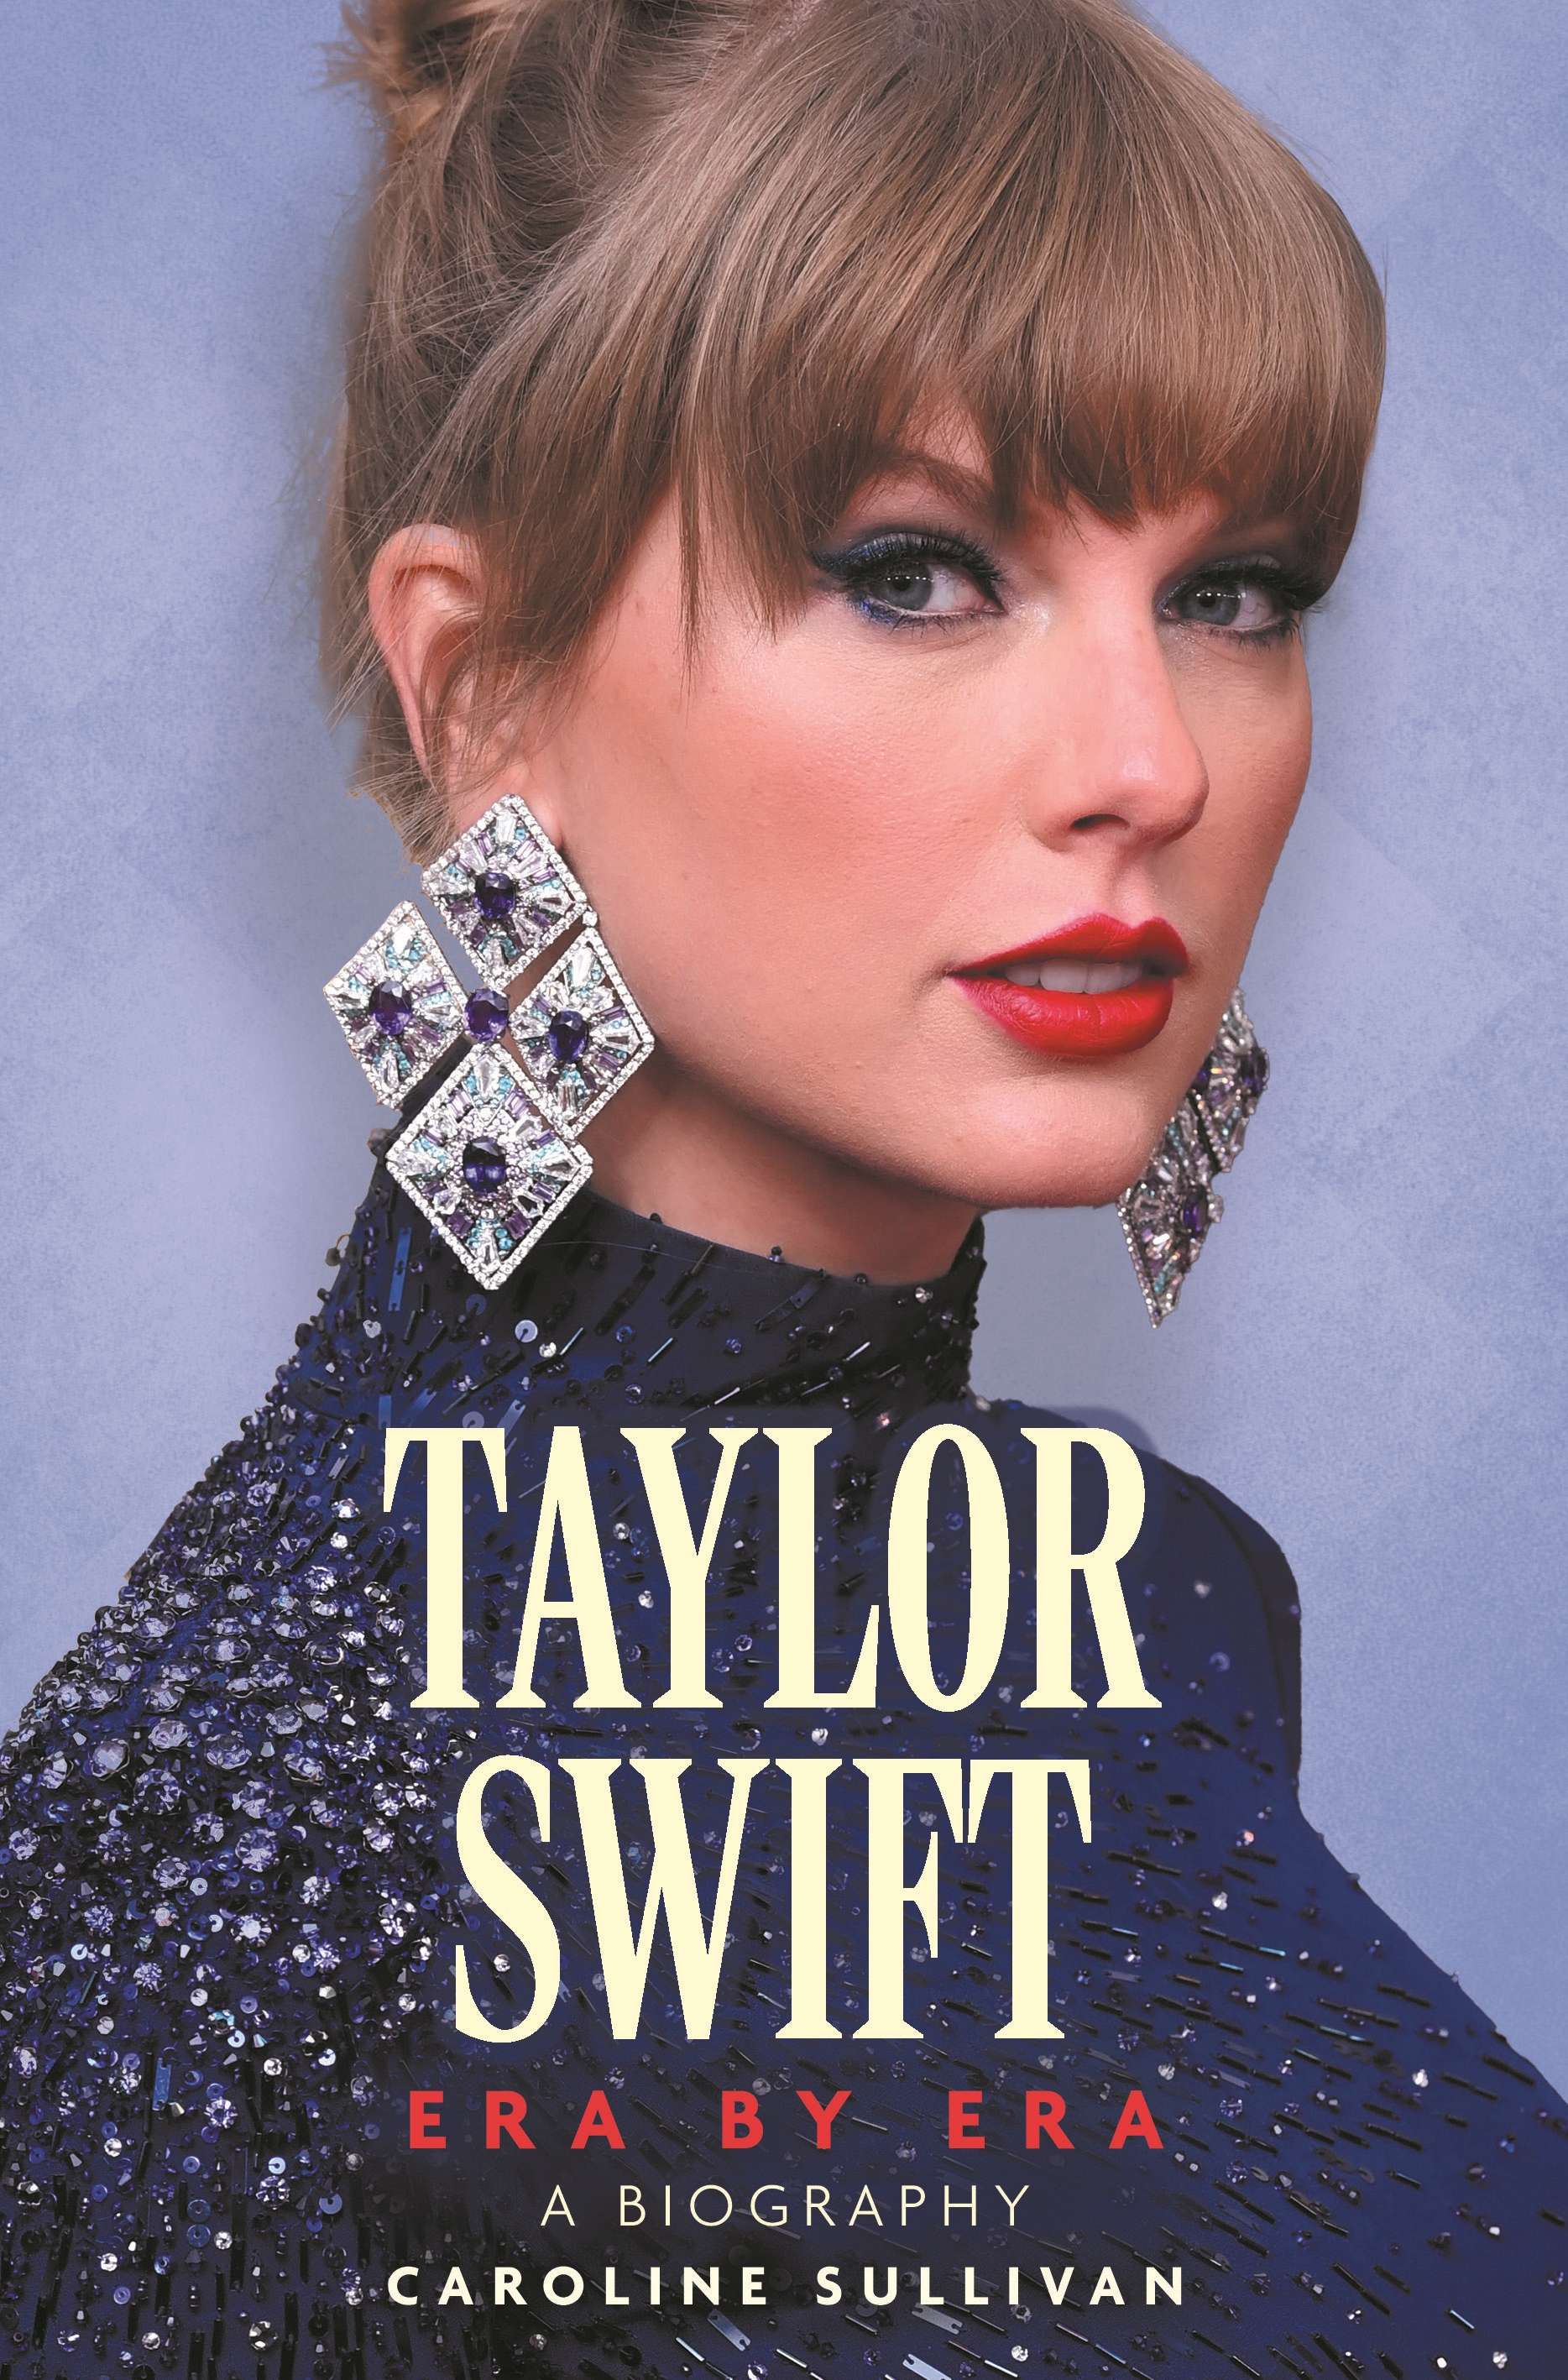 Taylor Swift: Era by Era